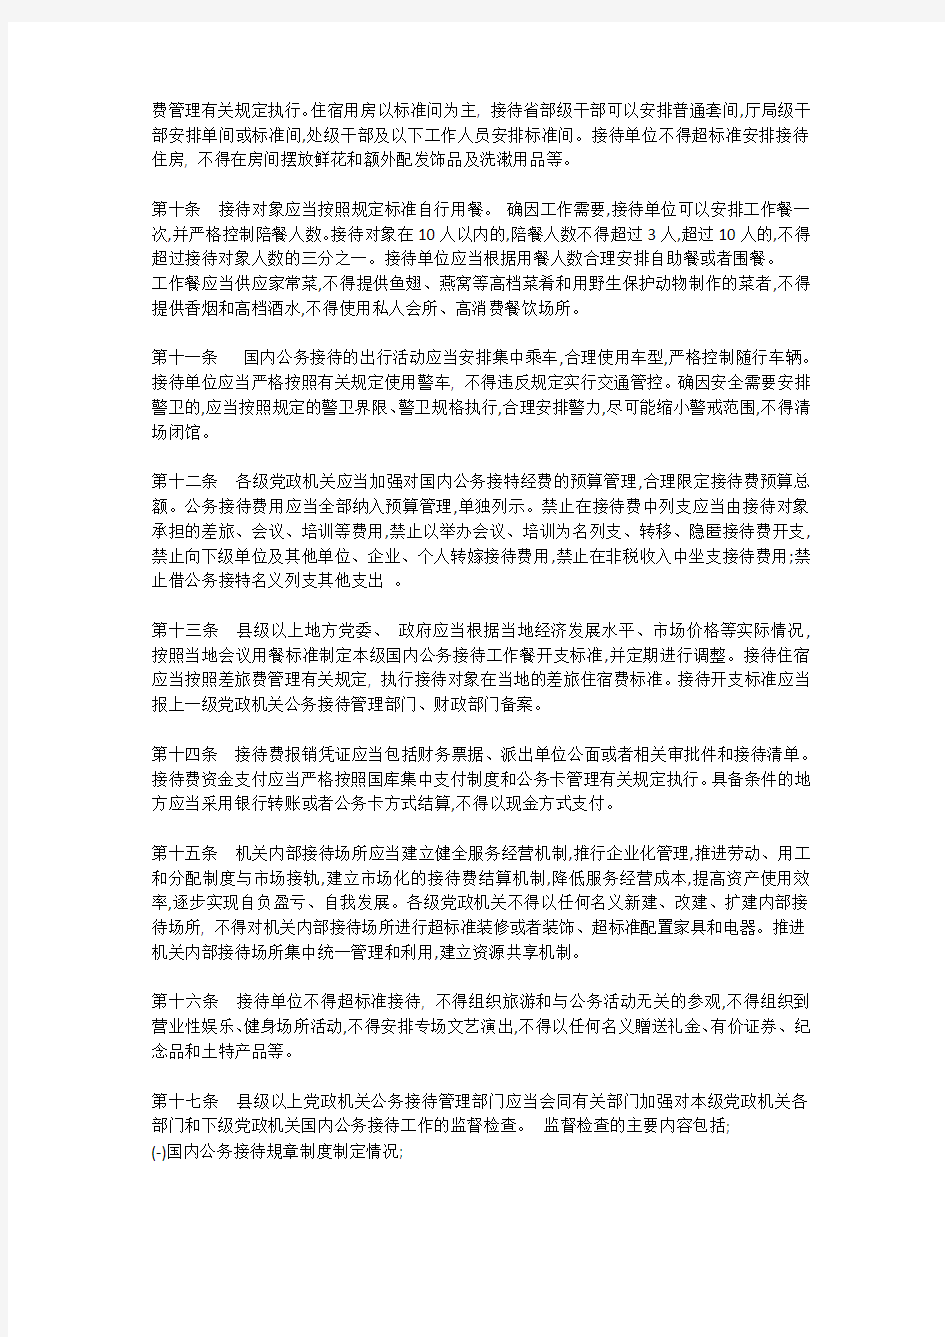 粤办发【2014】12号广东省党政机关国内公务接待管理办法